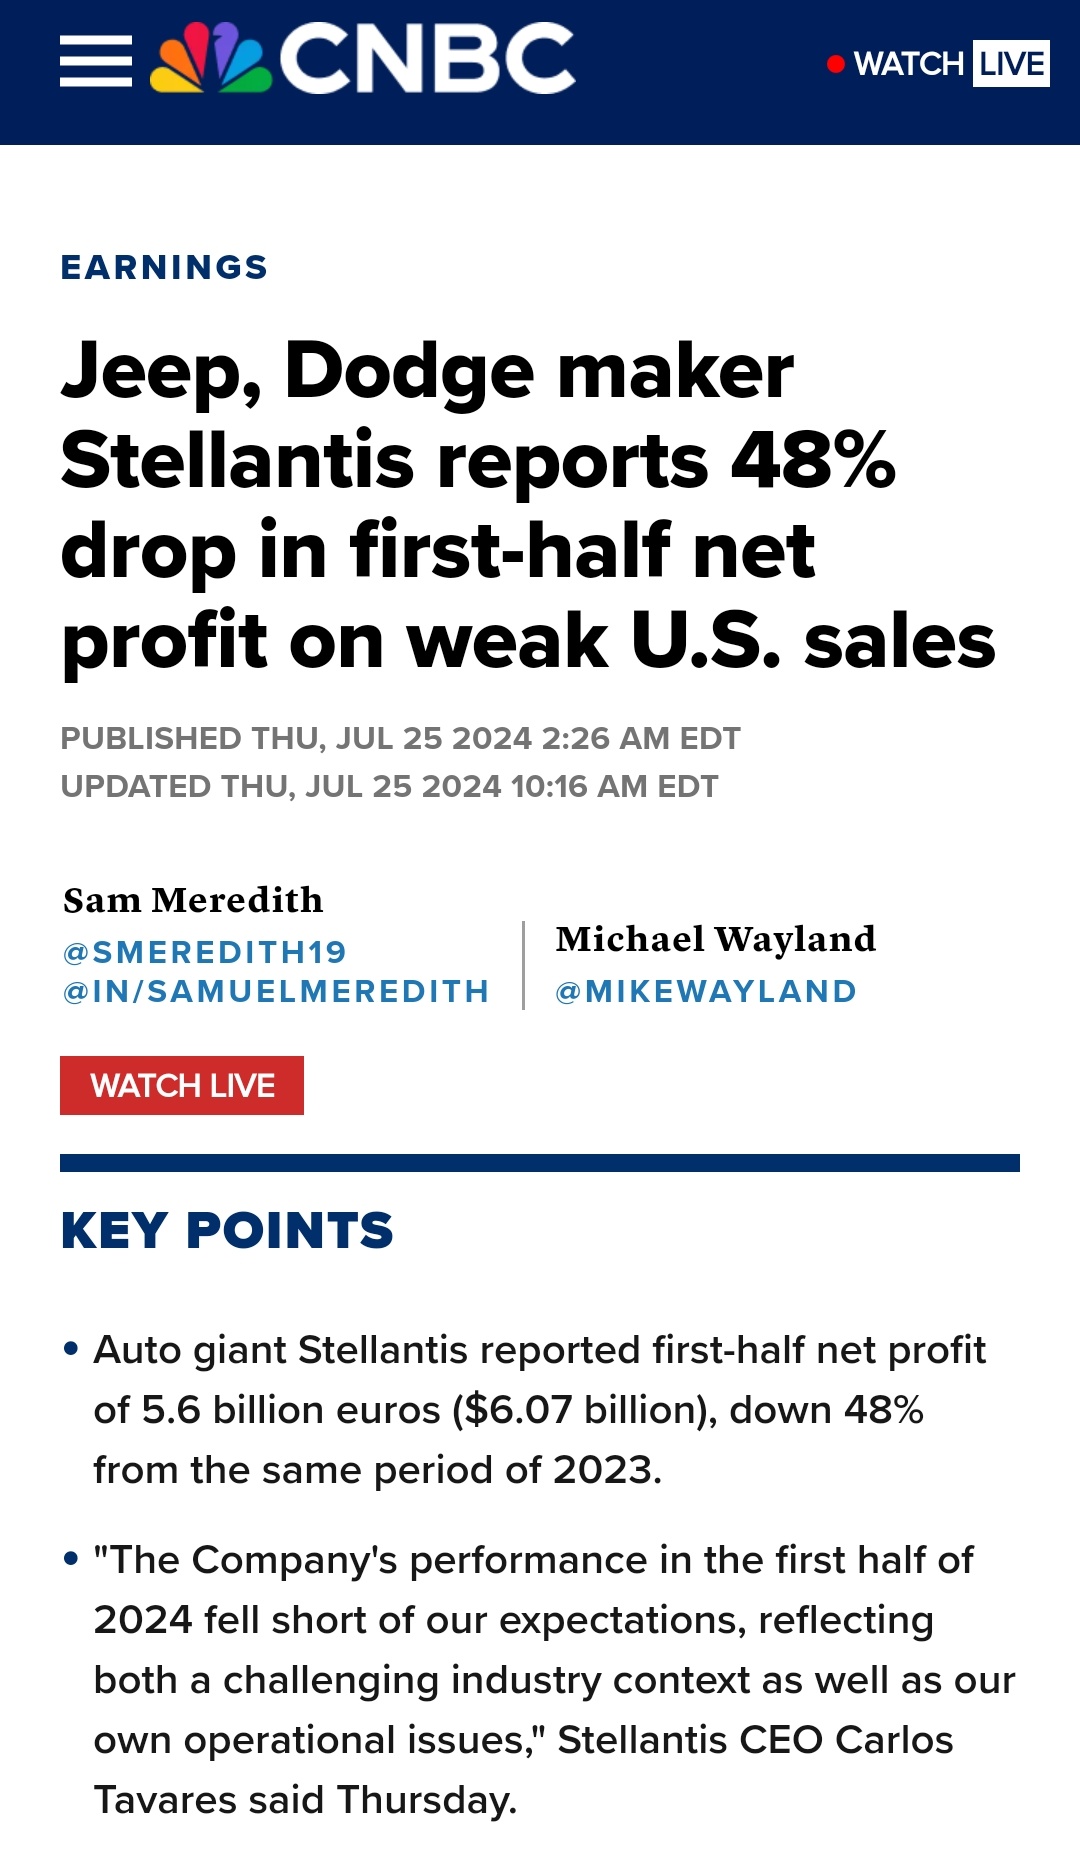 Jeep, Dodge maker Stellantis reports 48% drop in first-half net profit